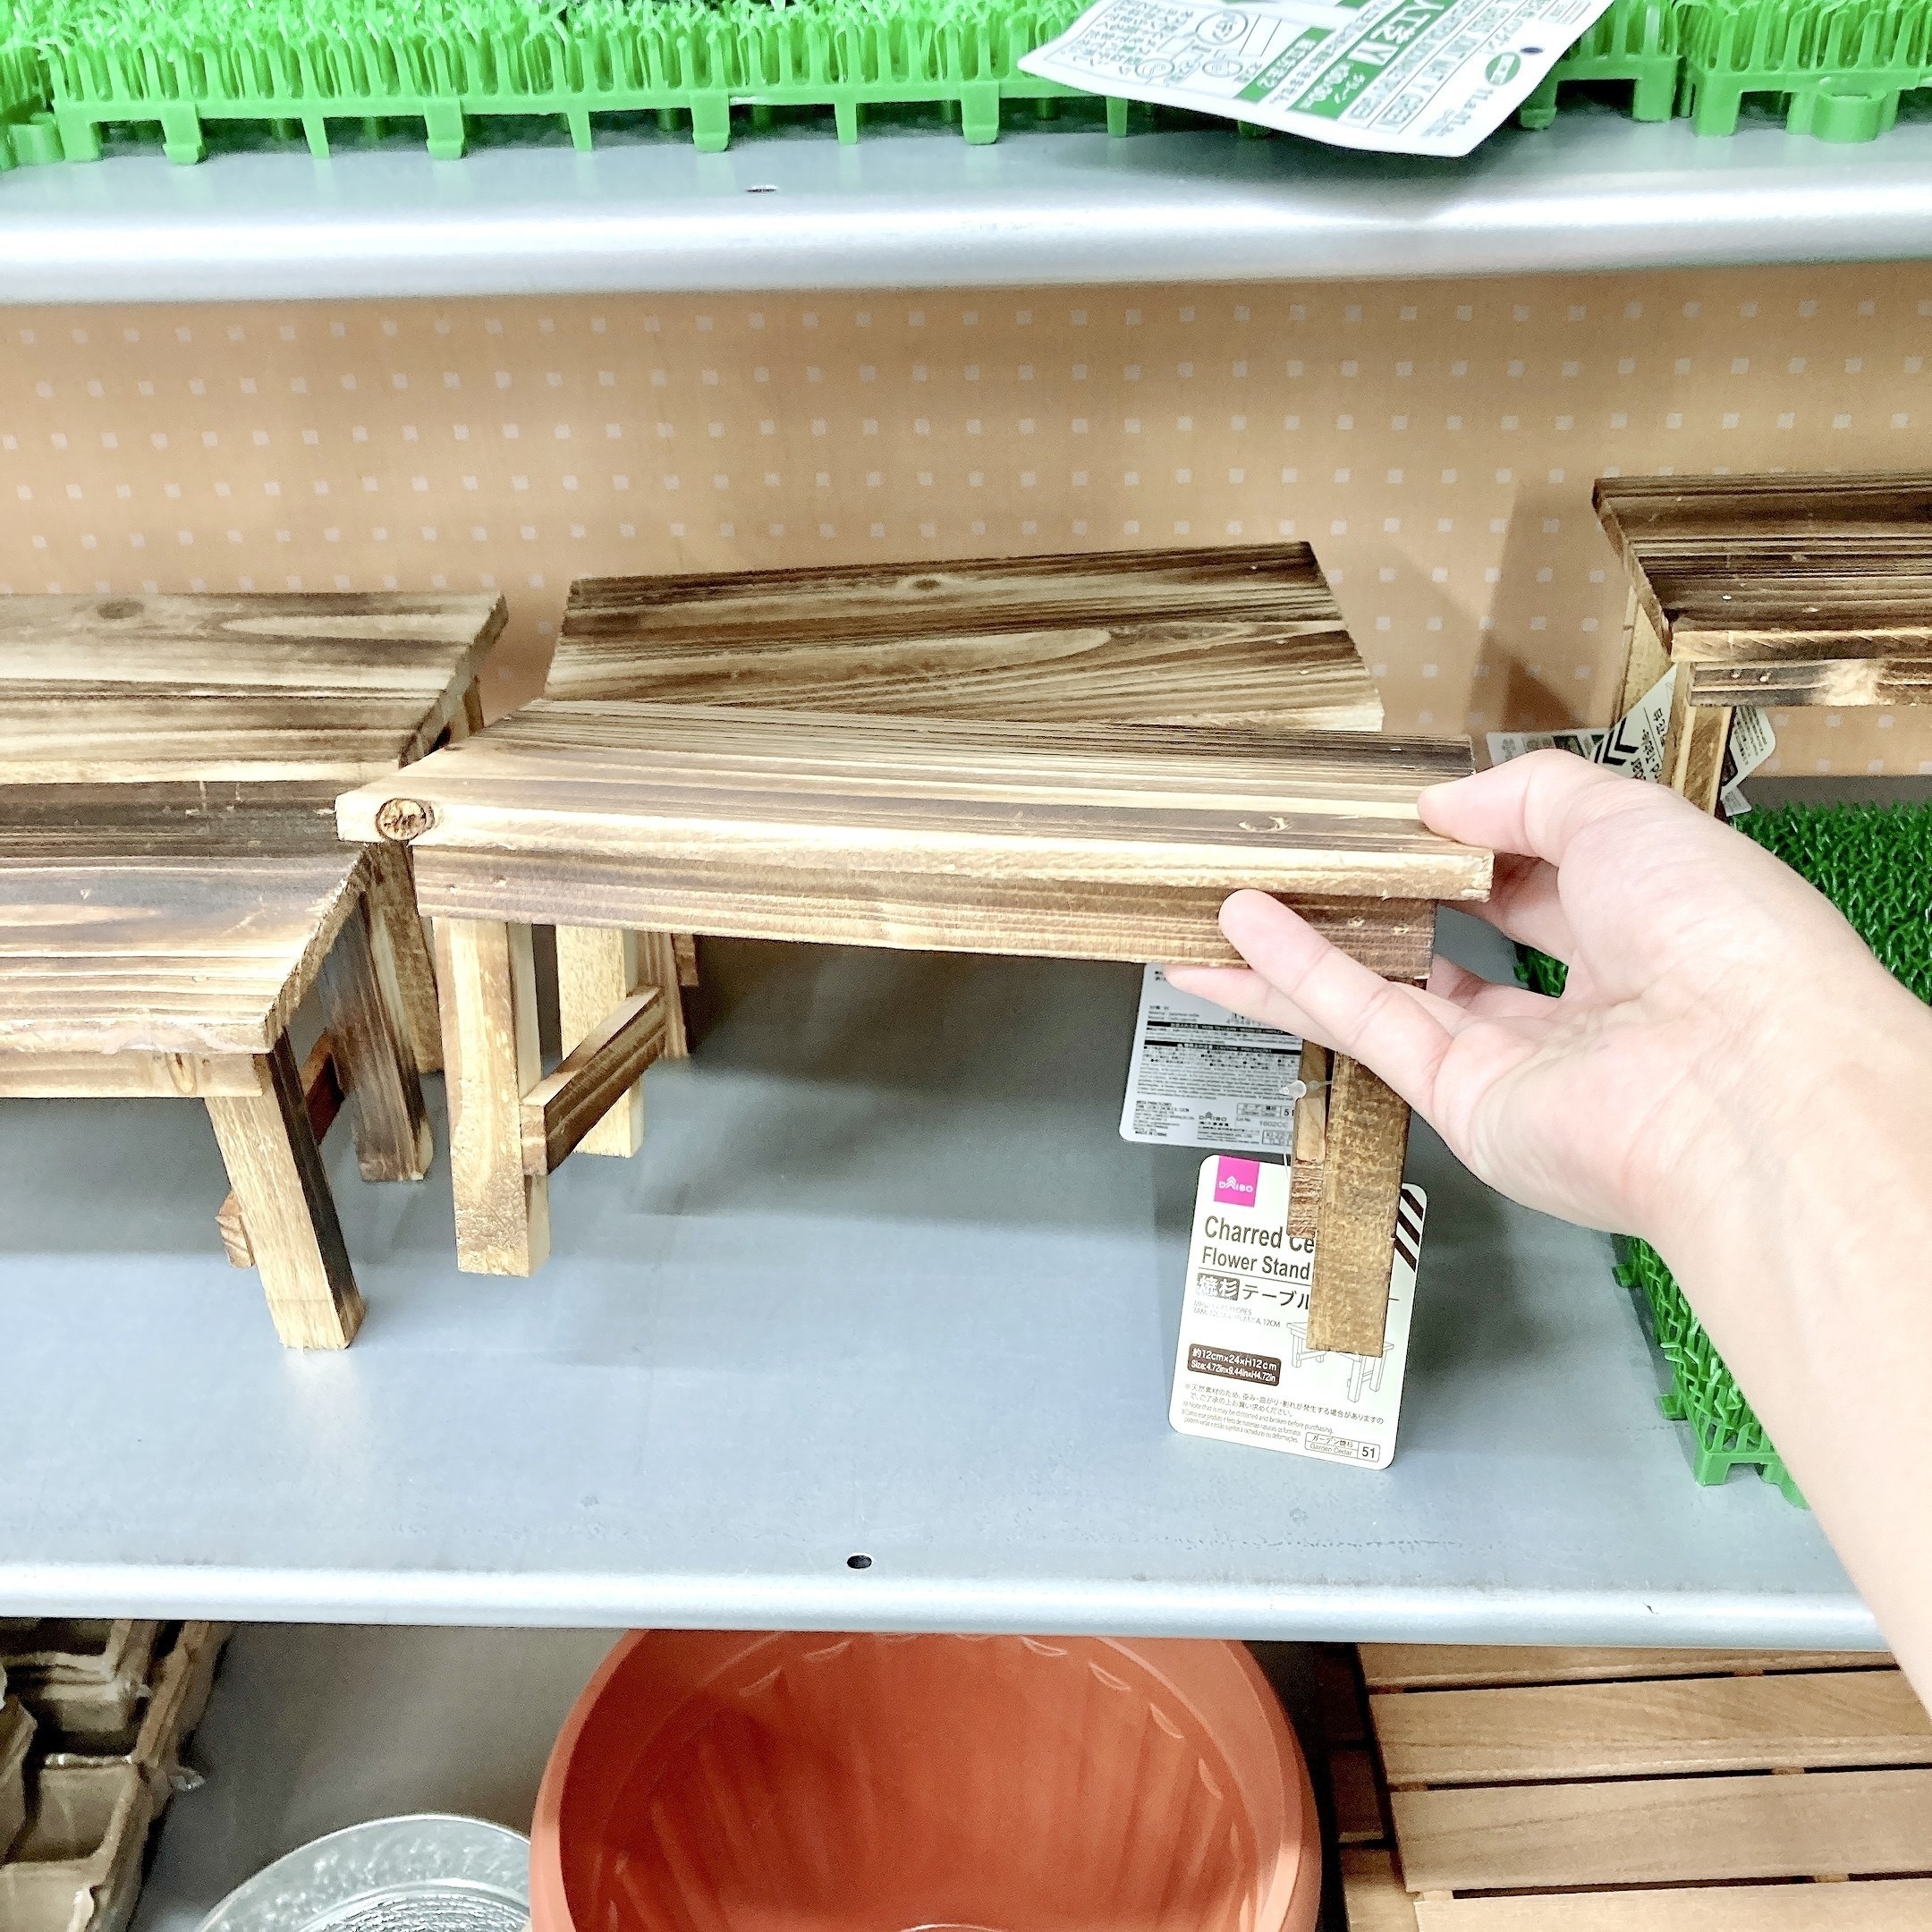 ★DAISO（ダイソー）のおすすめ収納アイテム「焼杉テーブル型花台」